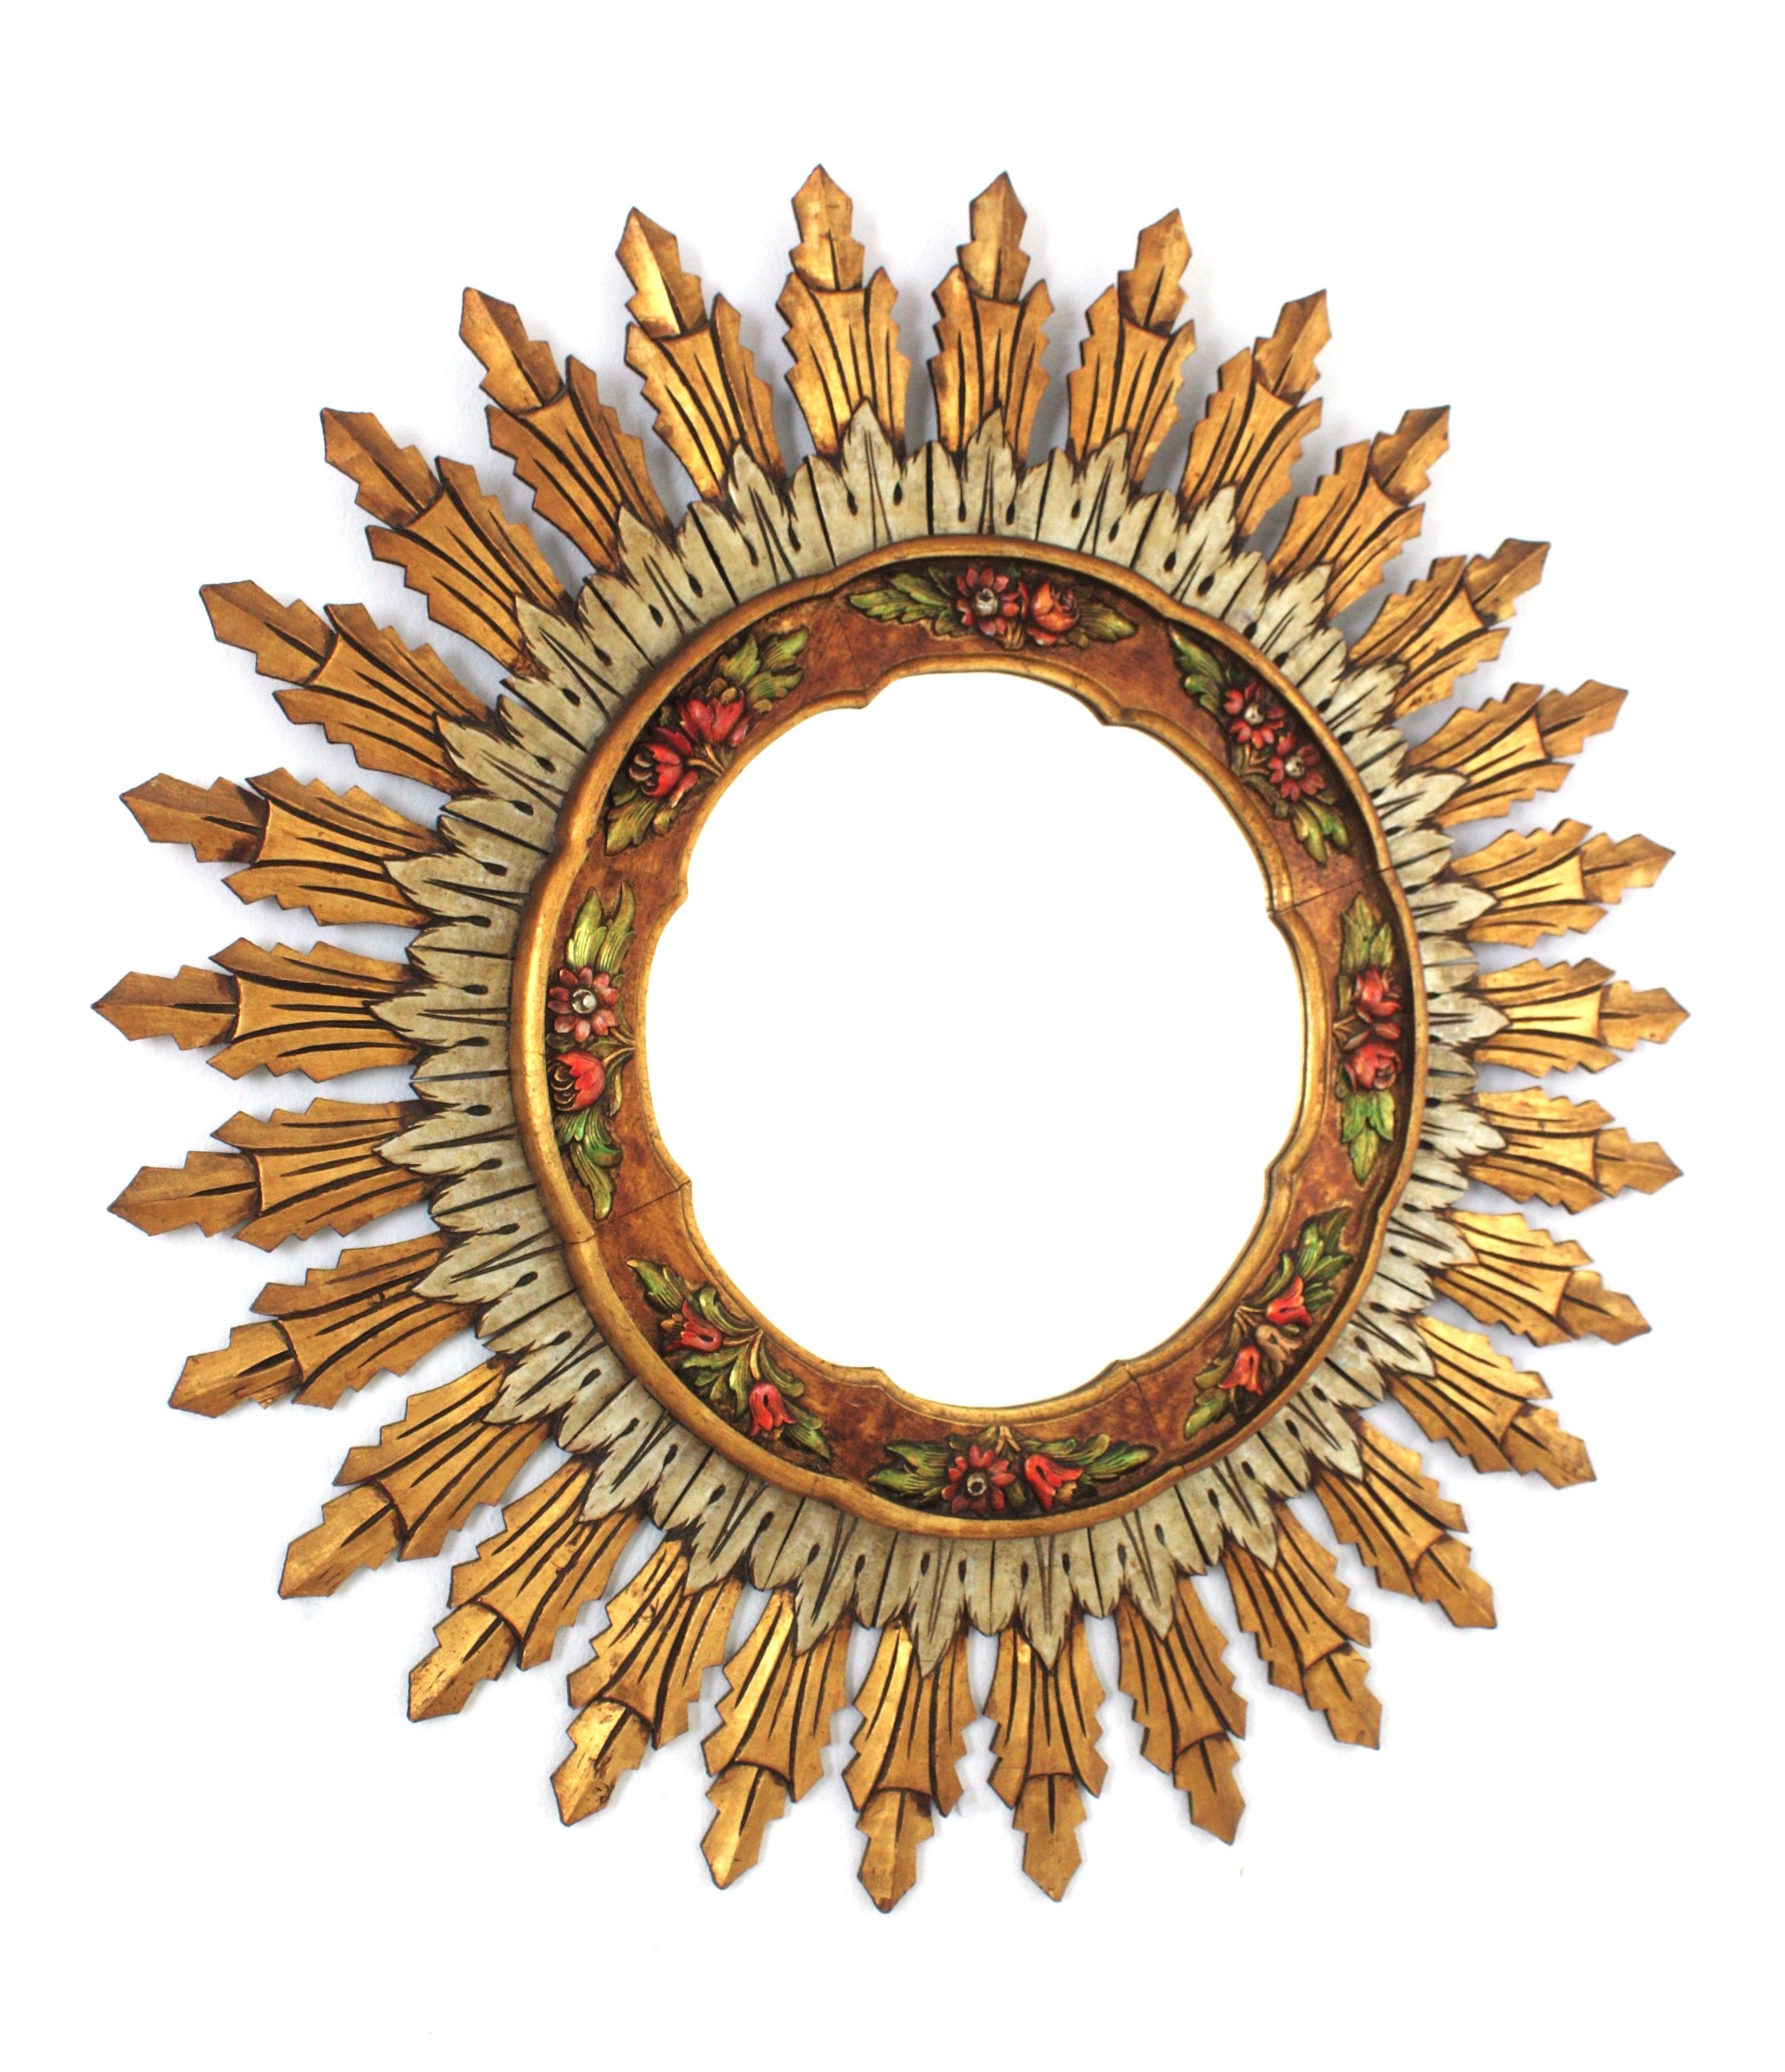 Miroir espagnol en bois sculpté, doré et argenté en forme de soleil
Miroir à double couche en bois doré avec détails floraux polychromes sculptés. Espagne, années 1960.
Ce miroir mural présente une couche de longs rayons à l'arrière et une couche de